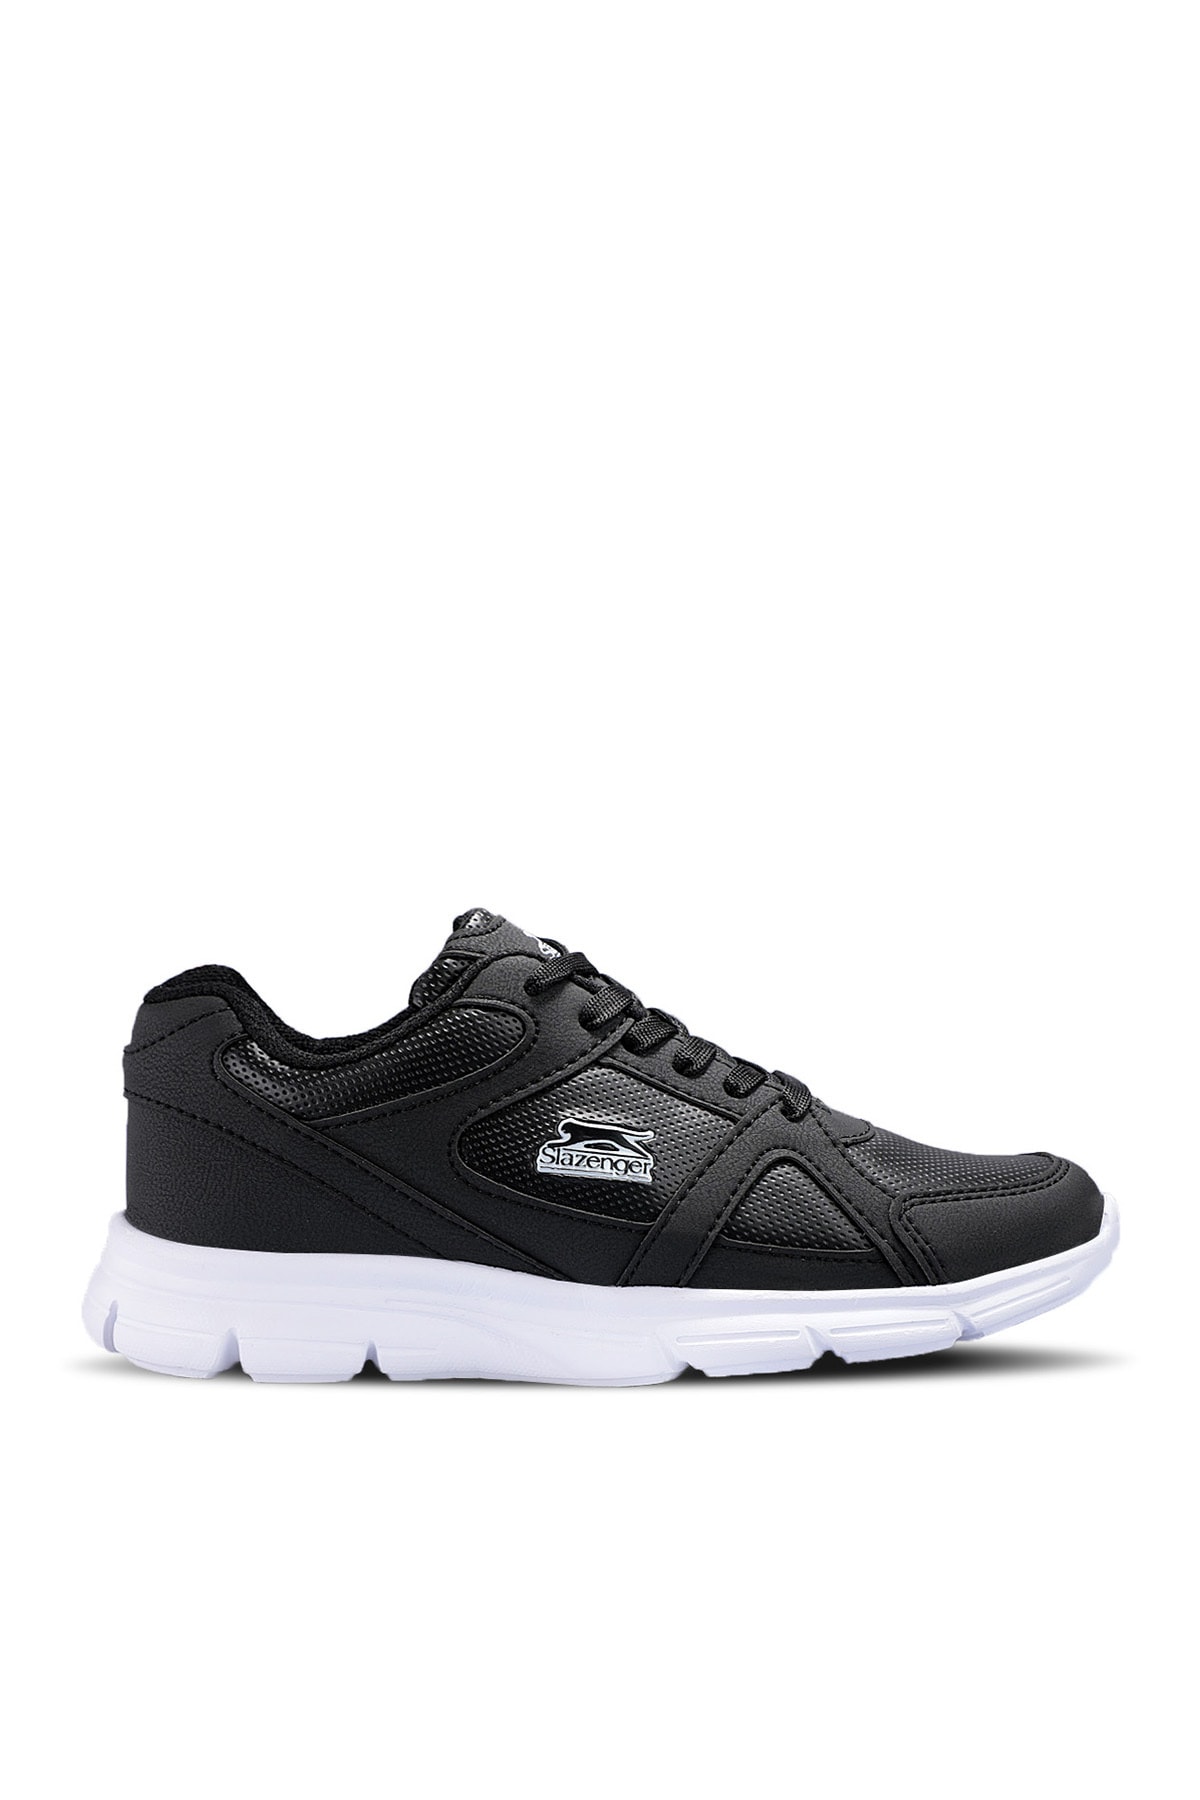 Slazenger Pera Sneaker Women's Shoes Black / White